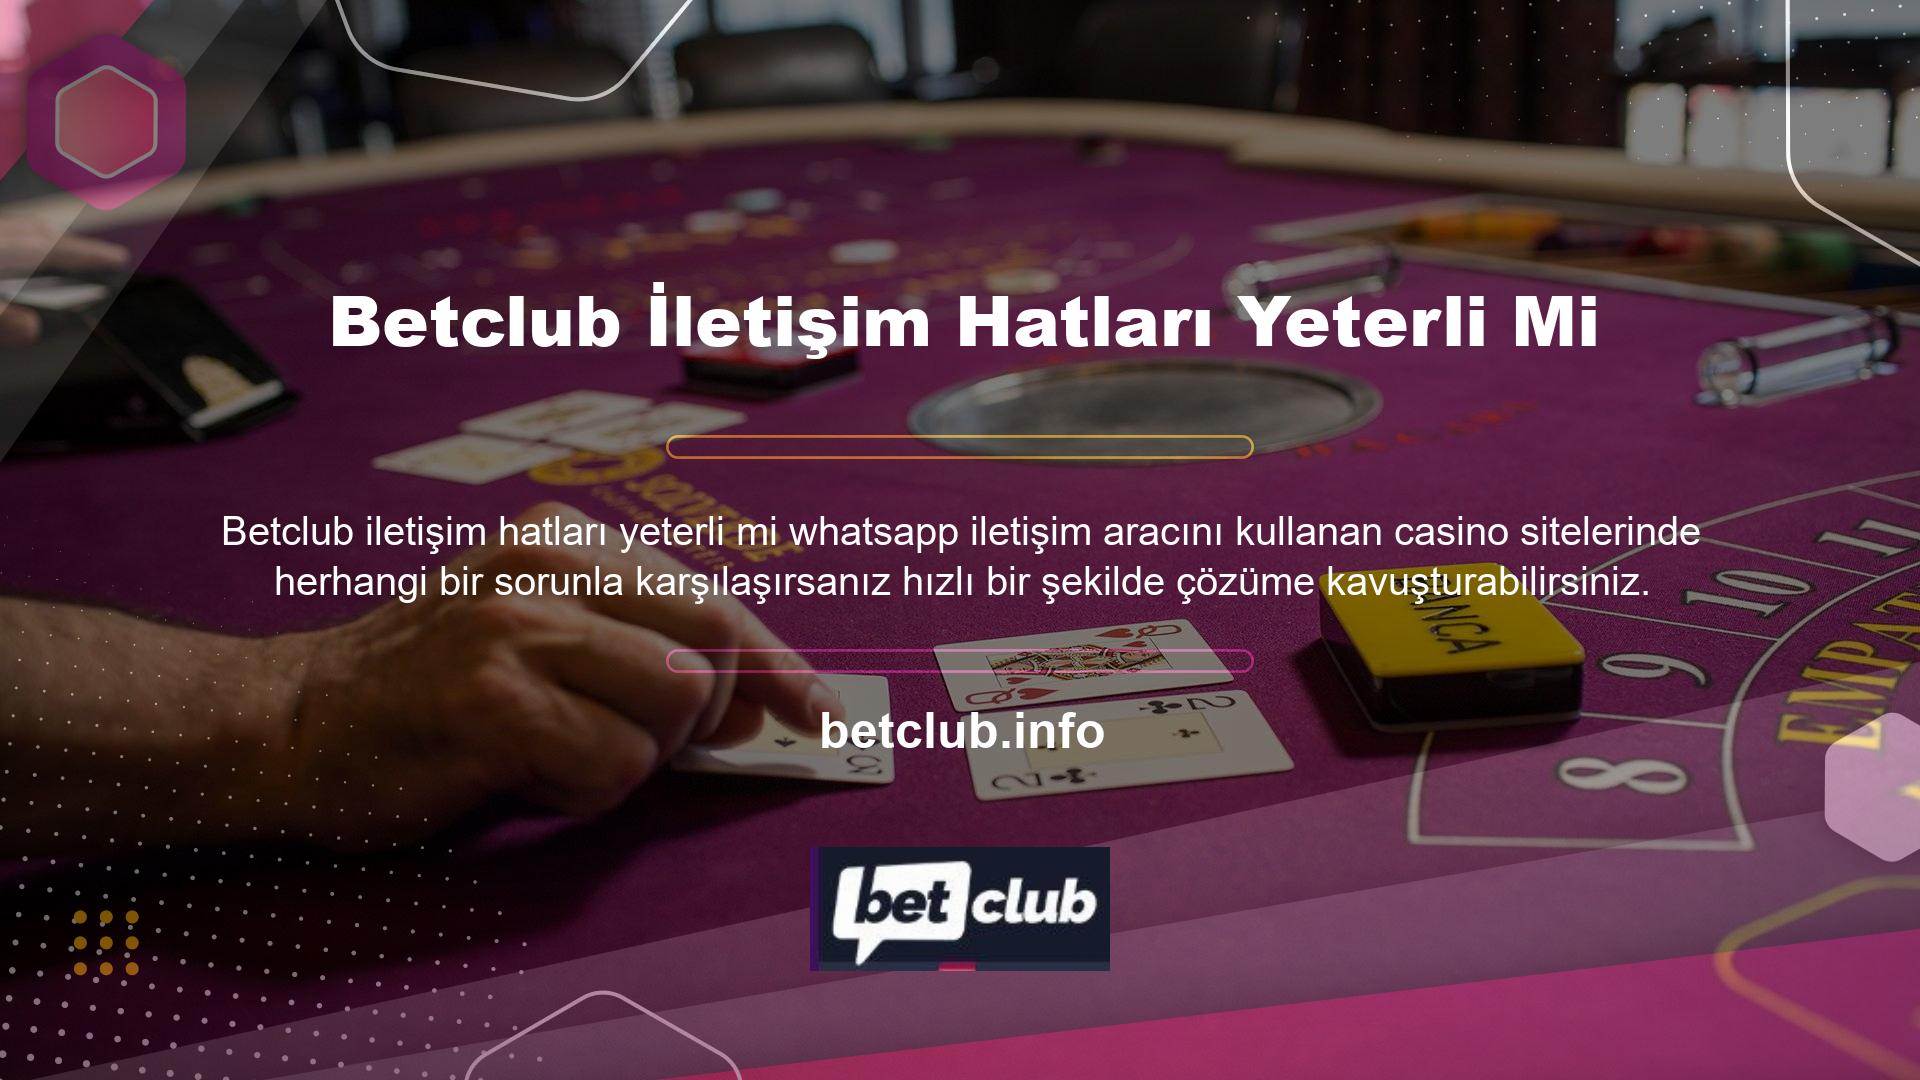 Ülkemizin casino sektöründeki faaliyetini casino sitesi şeklinde sürdürmeye karar veren şirket, aslında Kıbrıs'taki otellerde bulunan gerçek casinolardan ilham alarak online bir platforma geçti